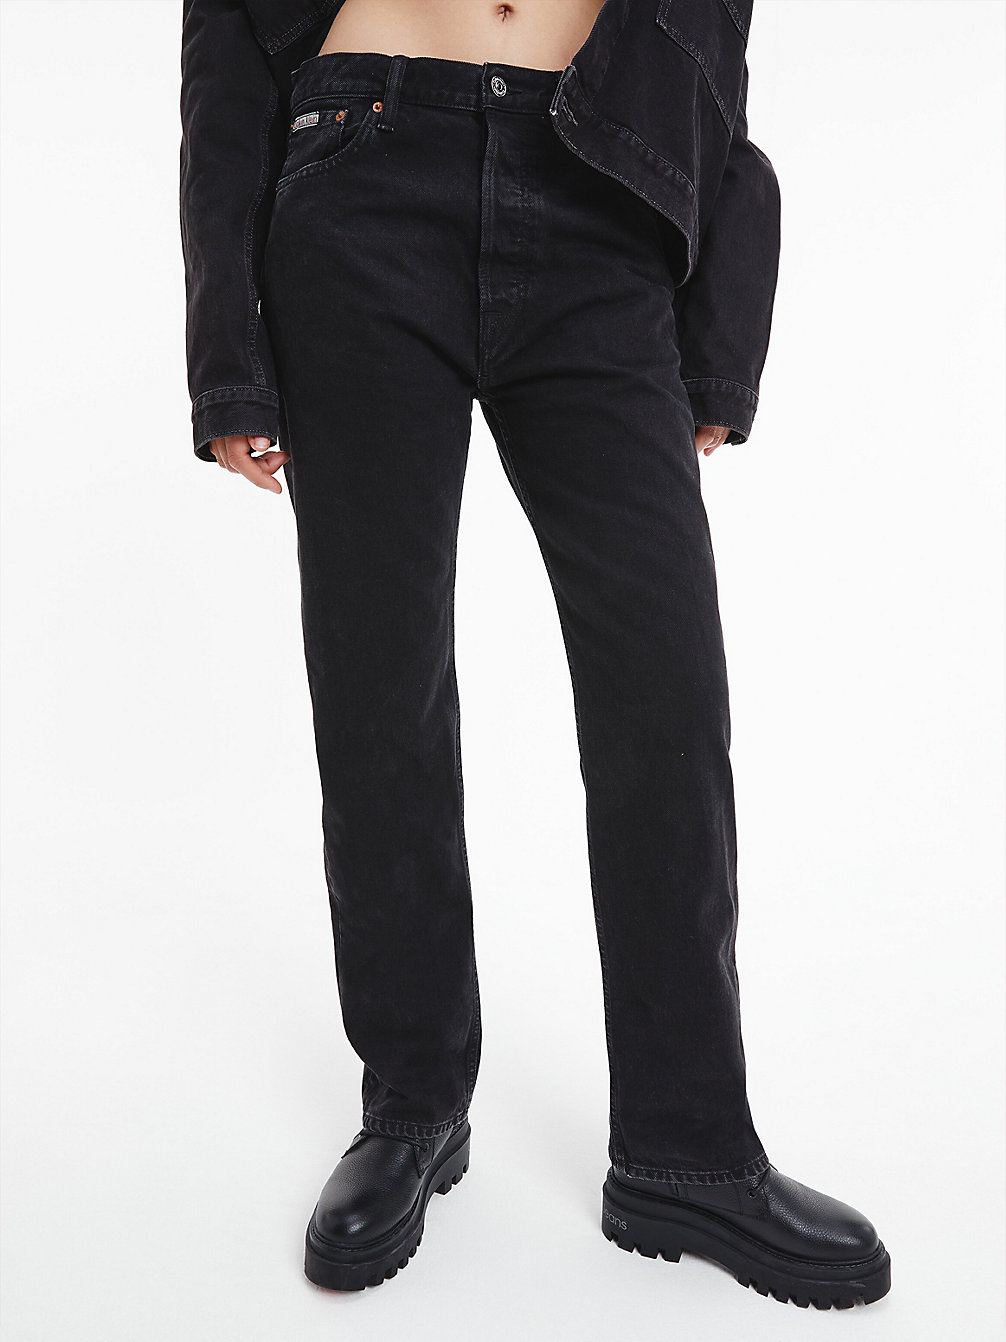 DENIM BLACK > Unisex Straight Jeans – CK Standards > undefined unisex - Calvin Klein